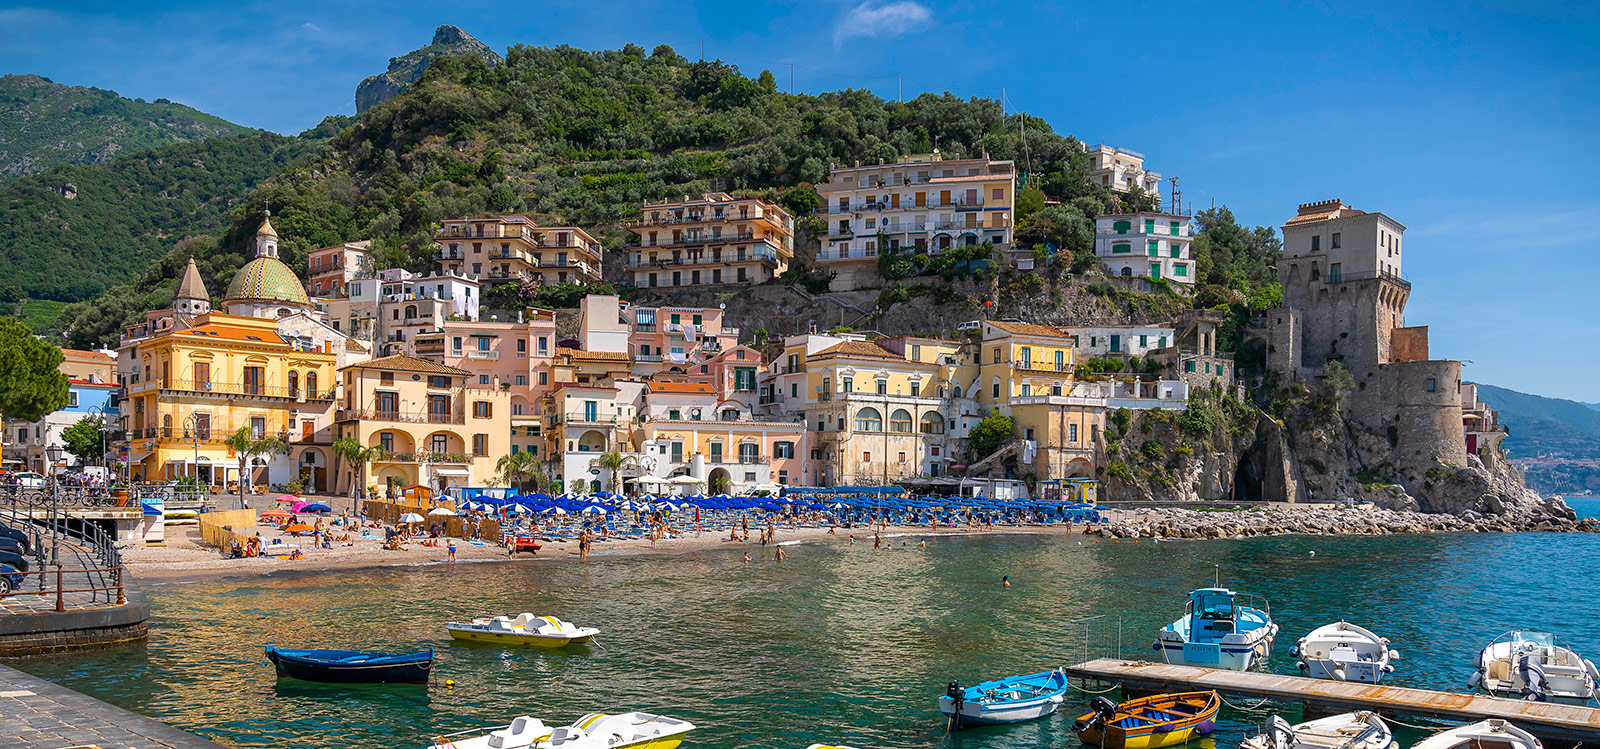 The italian village of in Campania, Italy - e-borghi